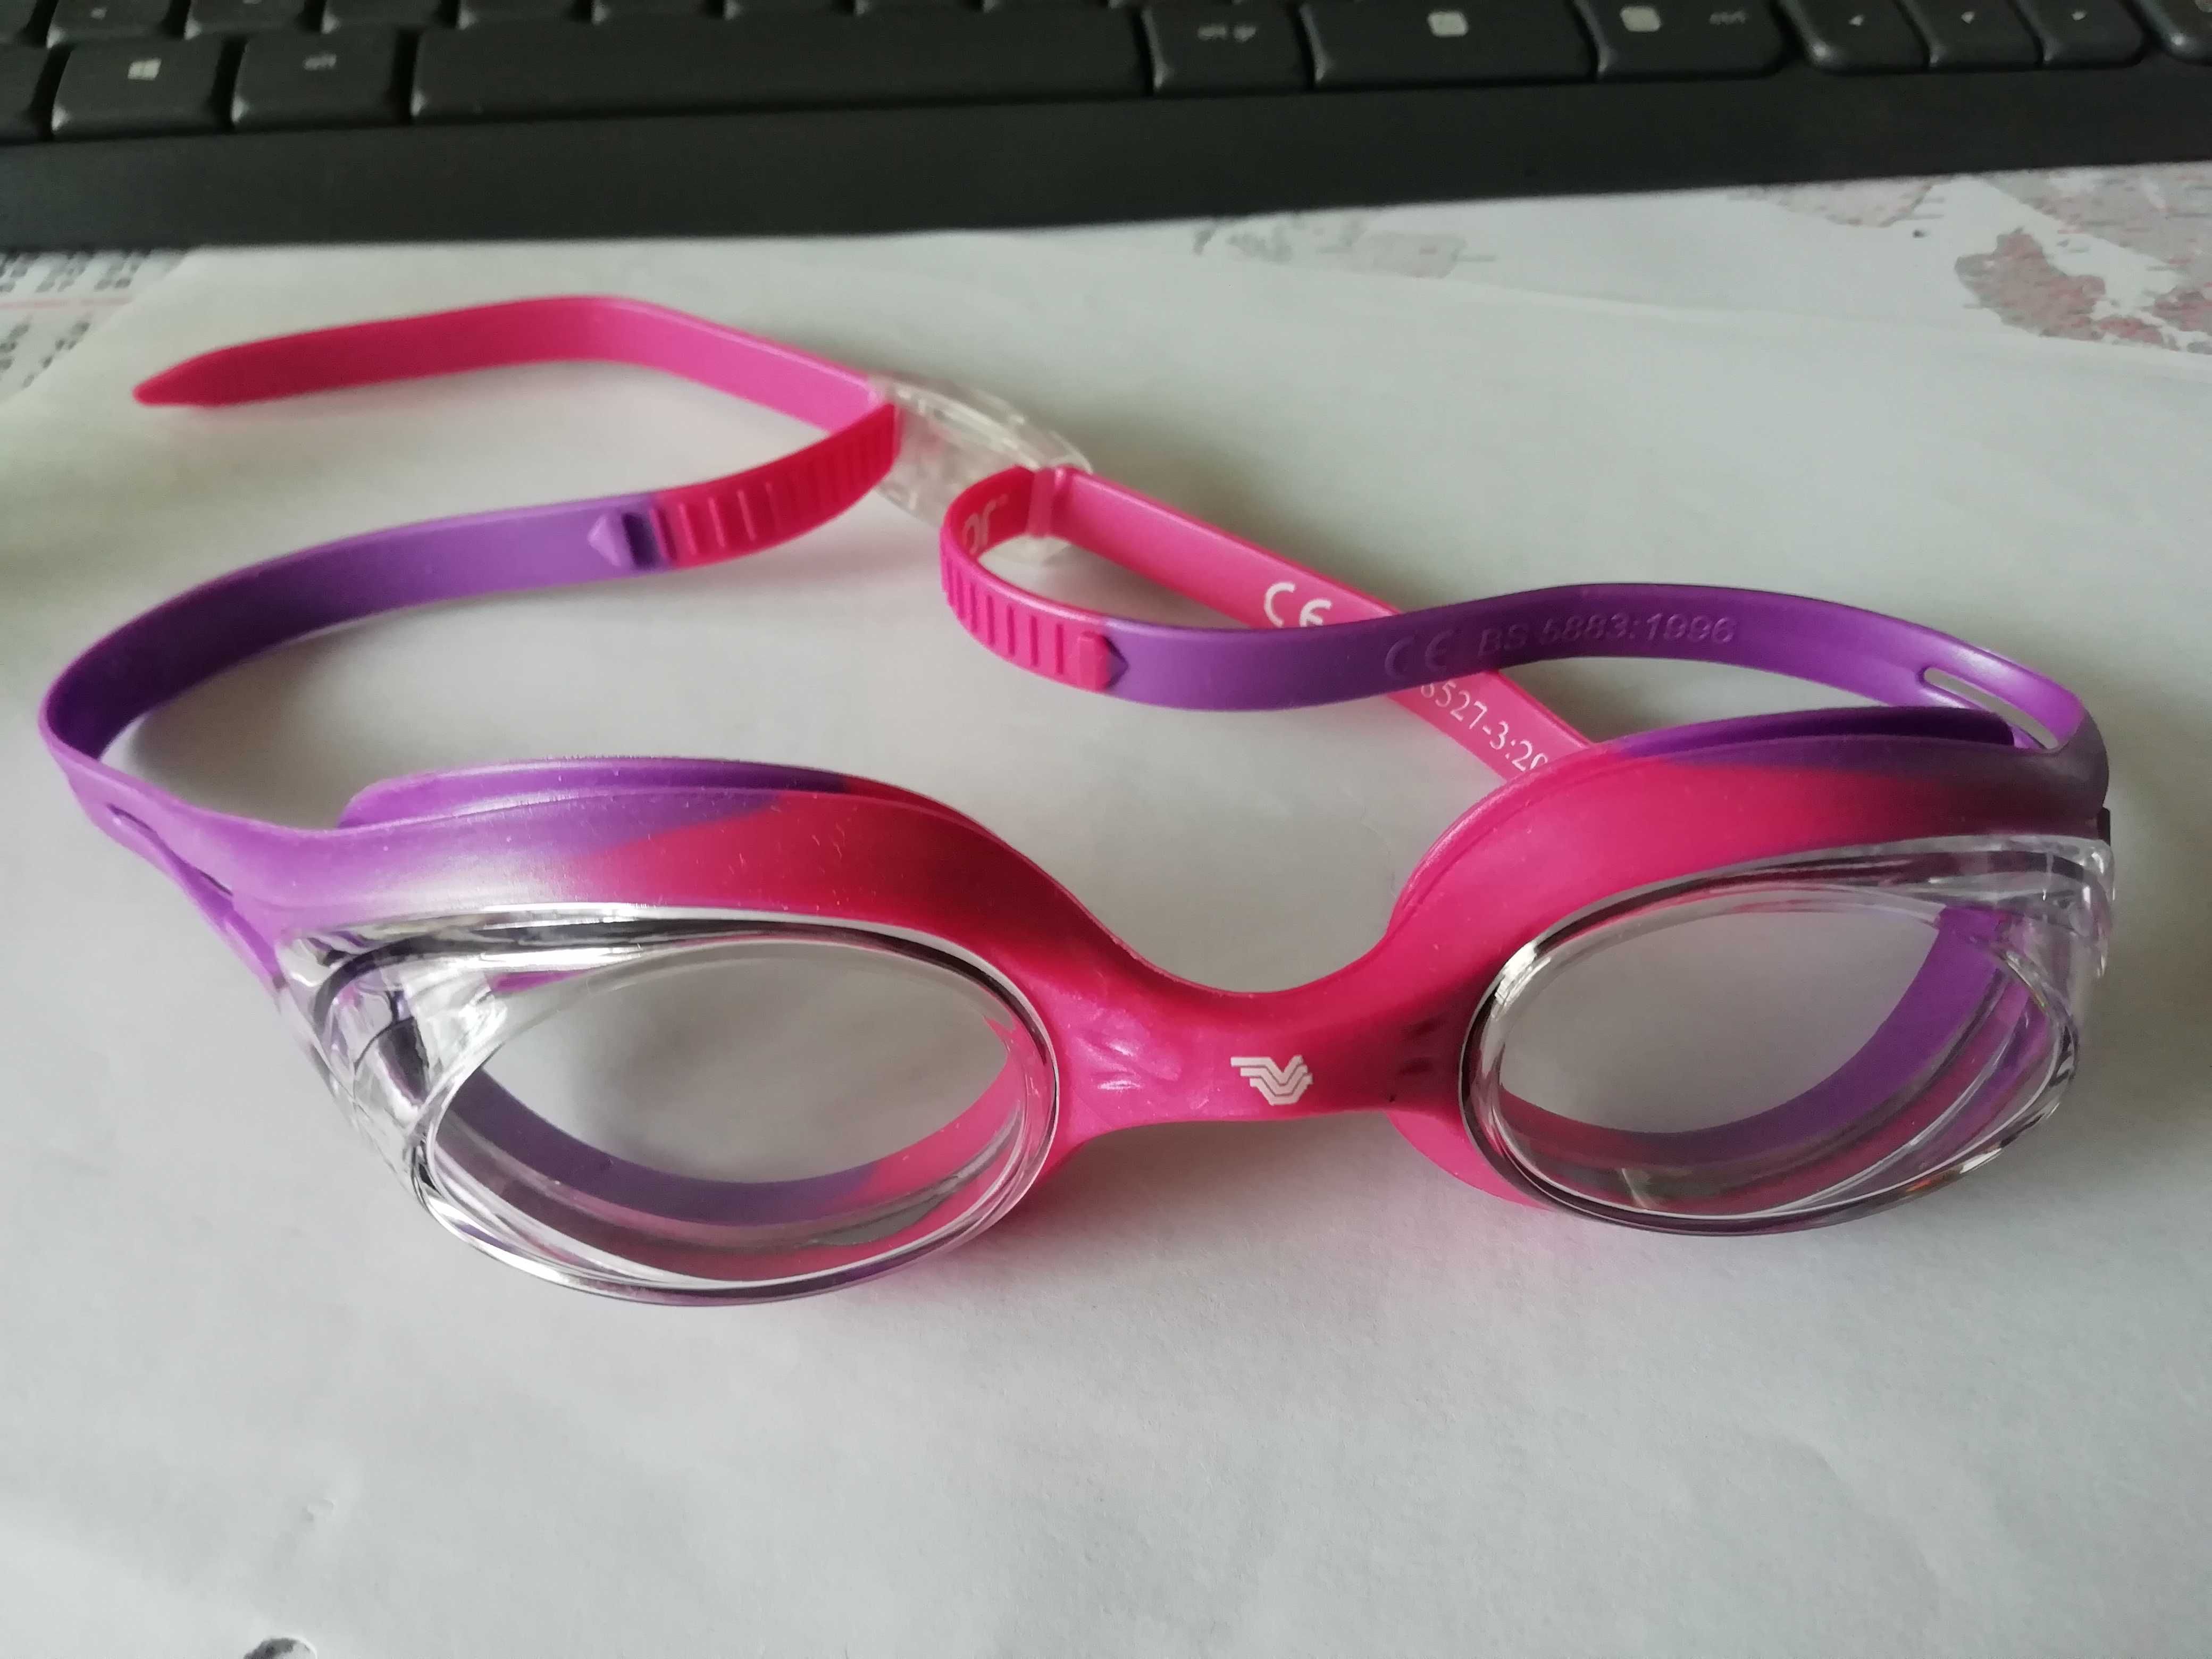 óculos de natação criança SPORTZONE novos